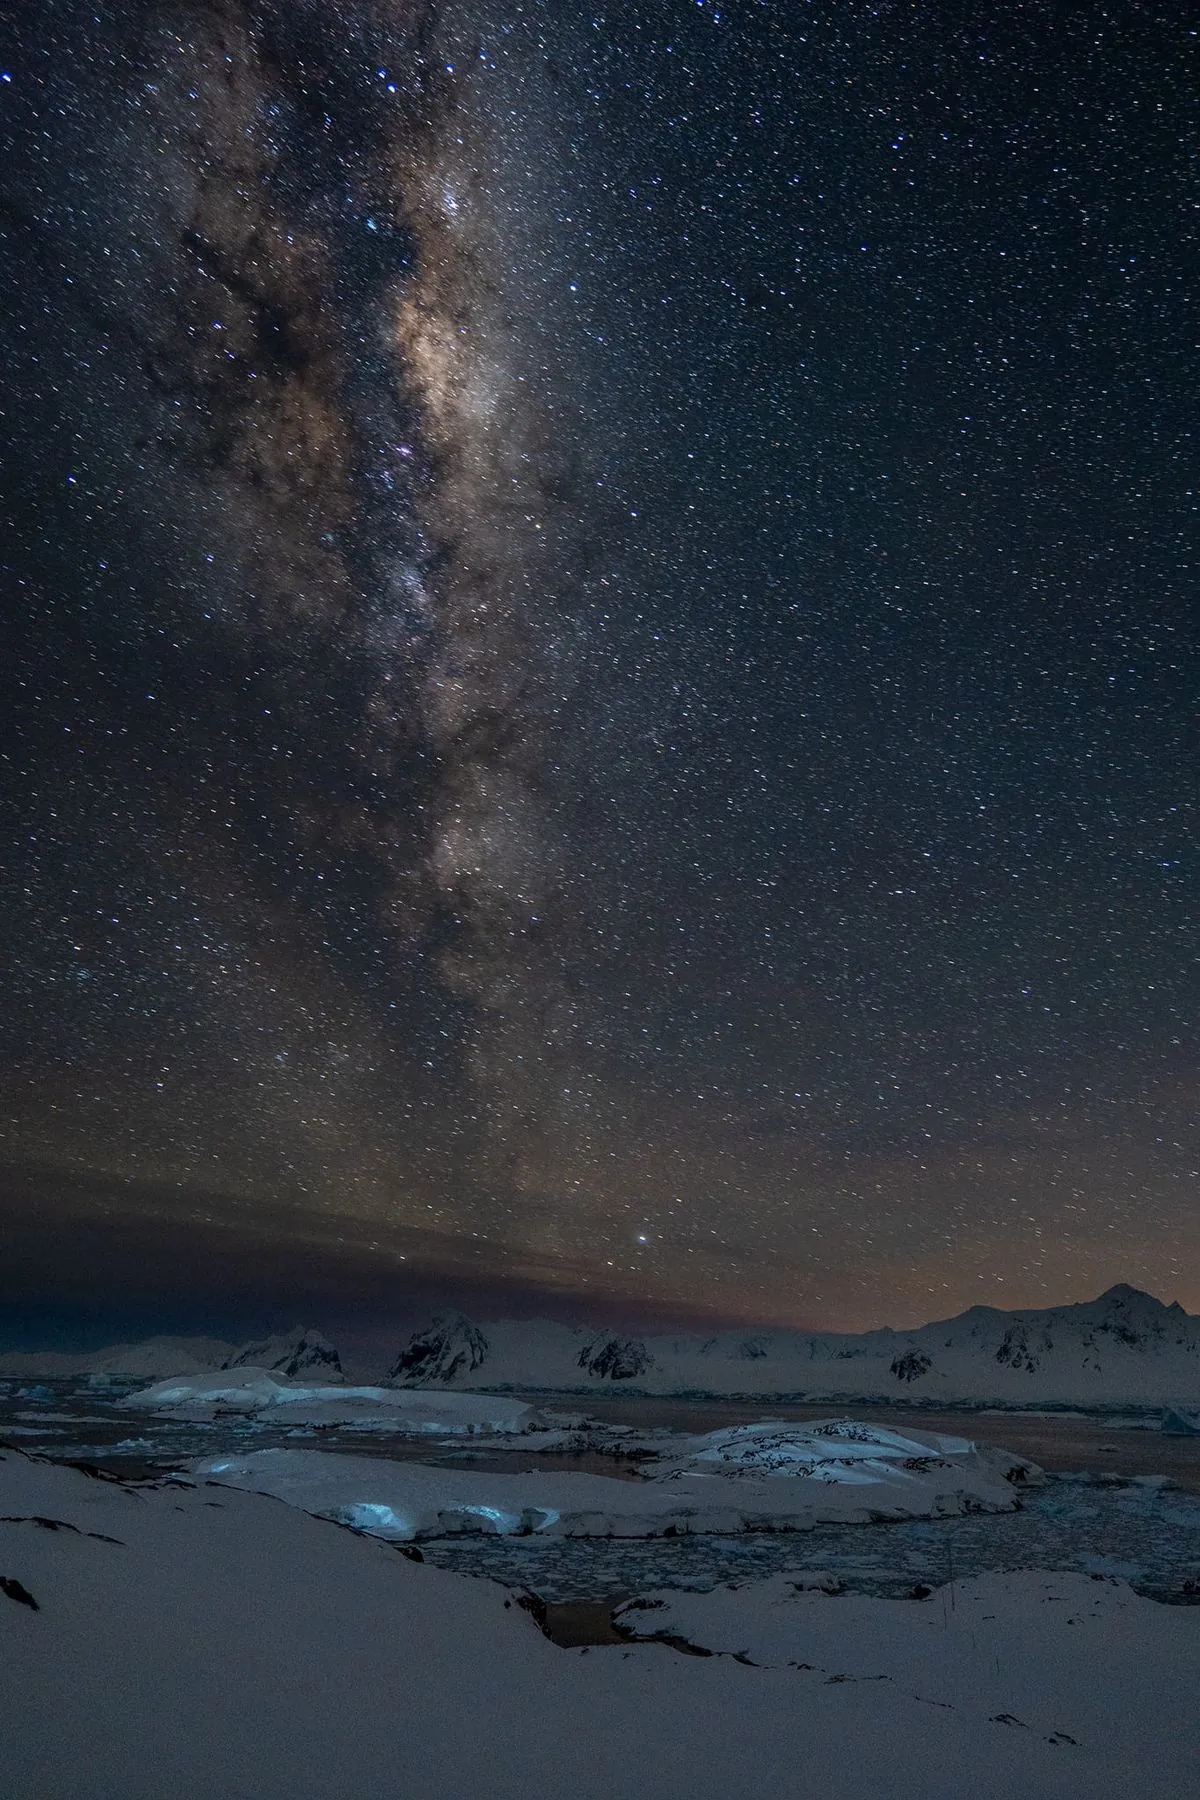 Ukrainian polar explorers show rare starry sky over Antarctica